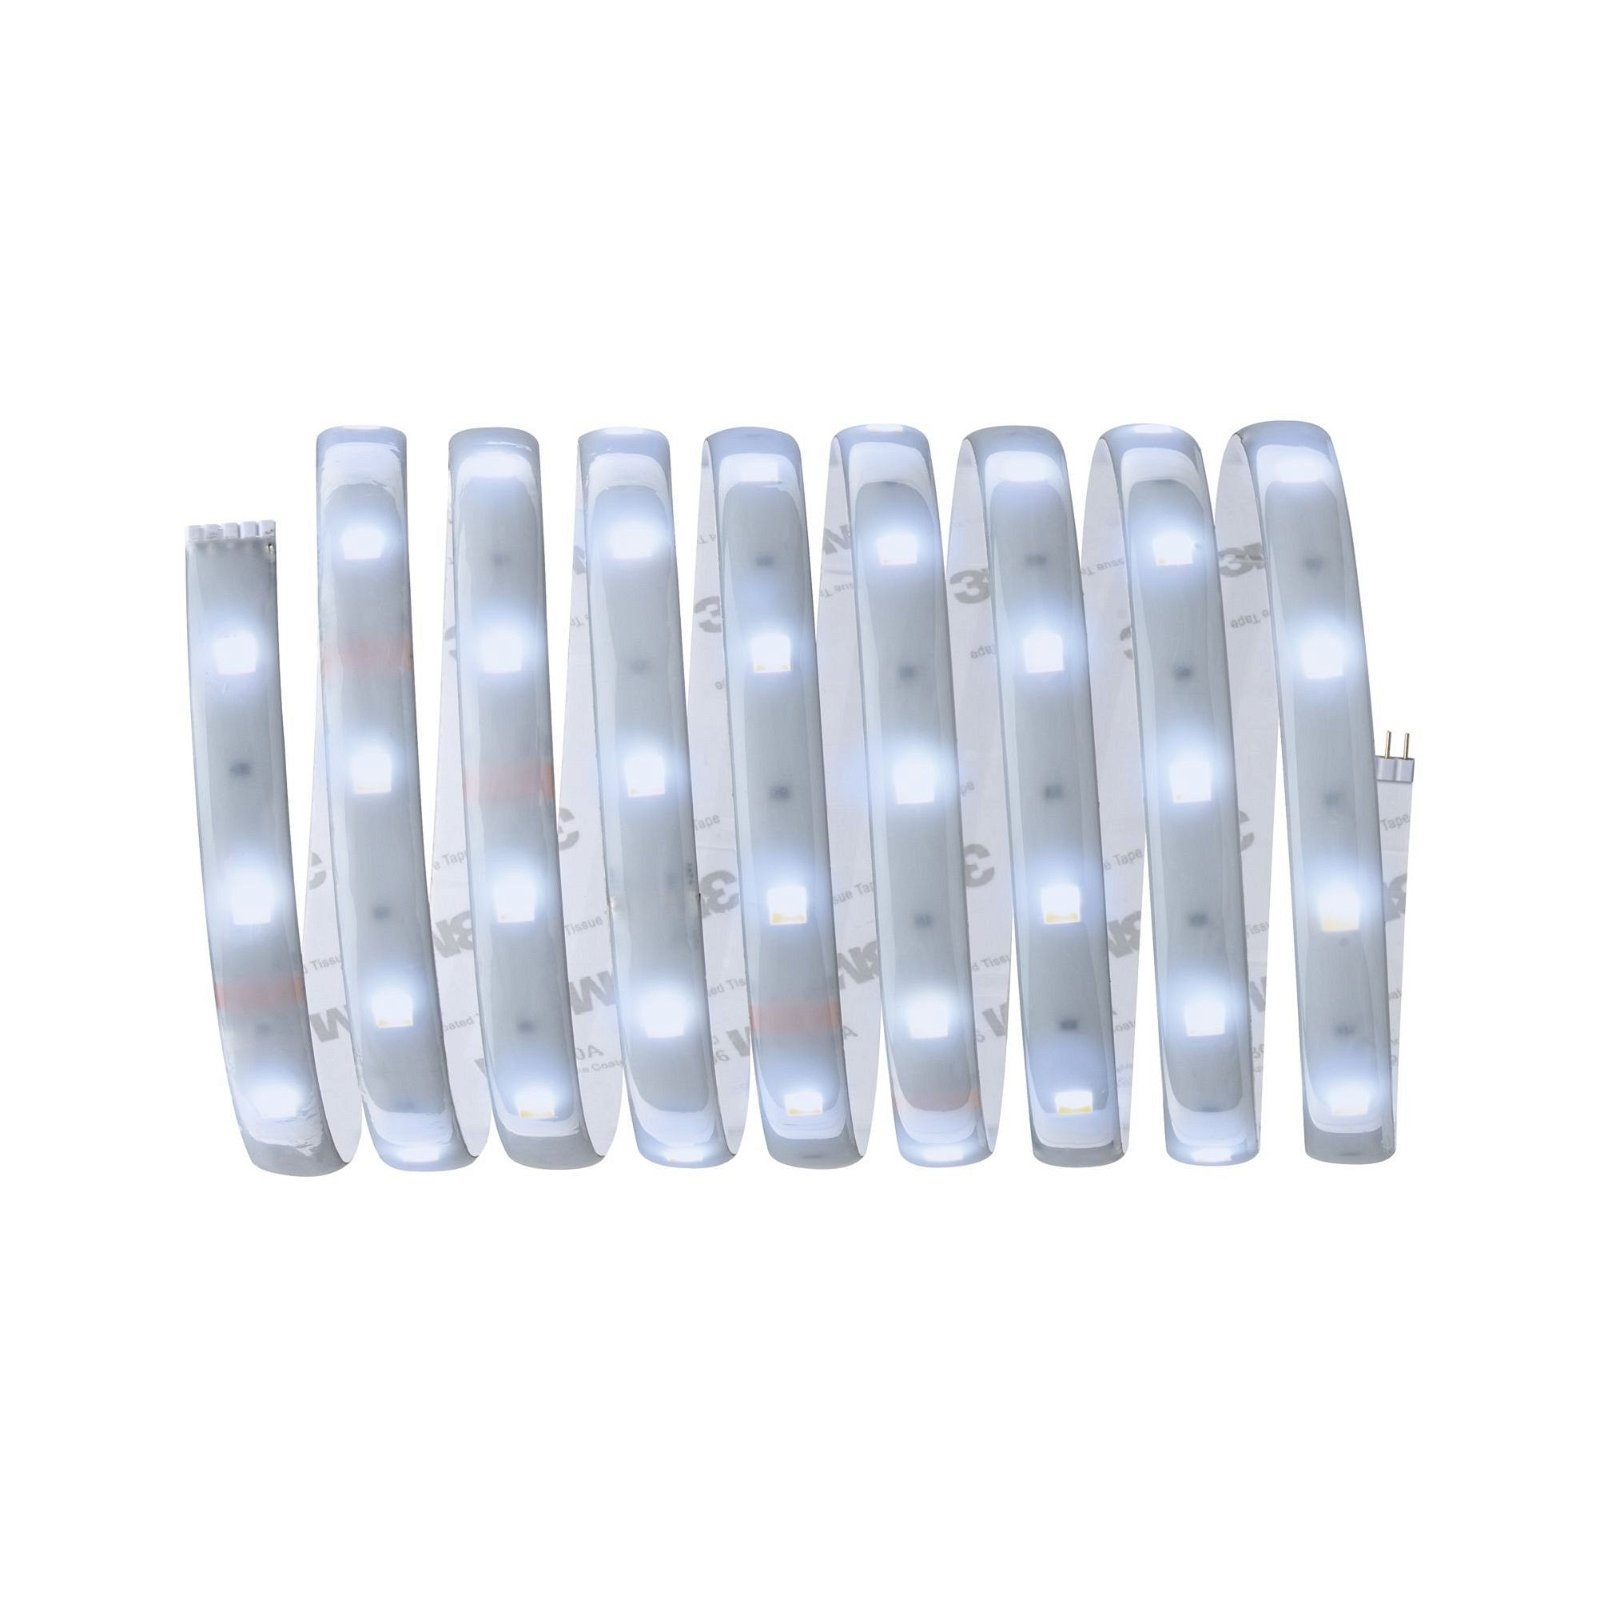 PAULMANN LICHT MaxLED (79879) Strips Tunable White 250 LED